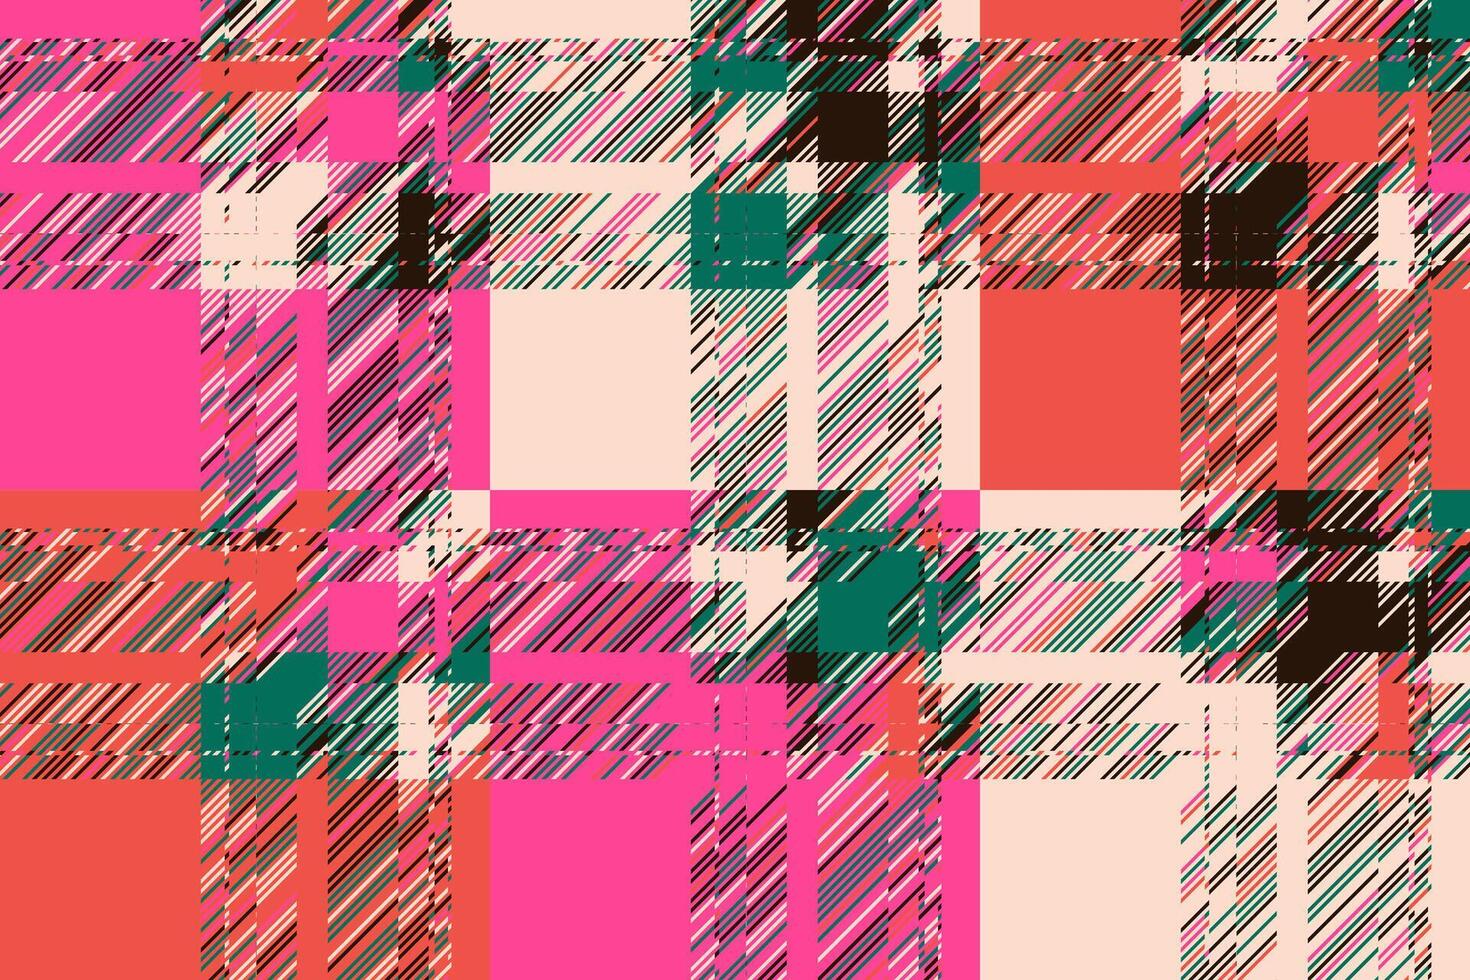 moderner Glitch-Hintergrund. Farbgeometrischer abstrakter Mustervektor. vektor